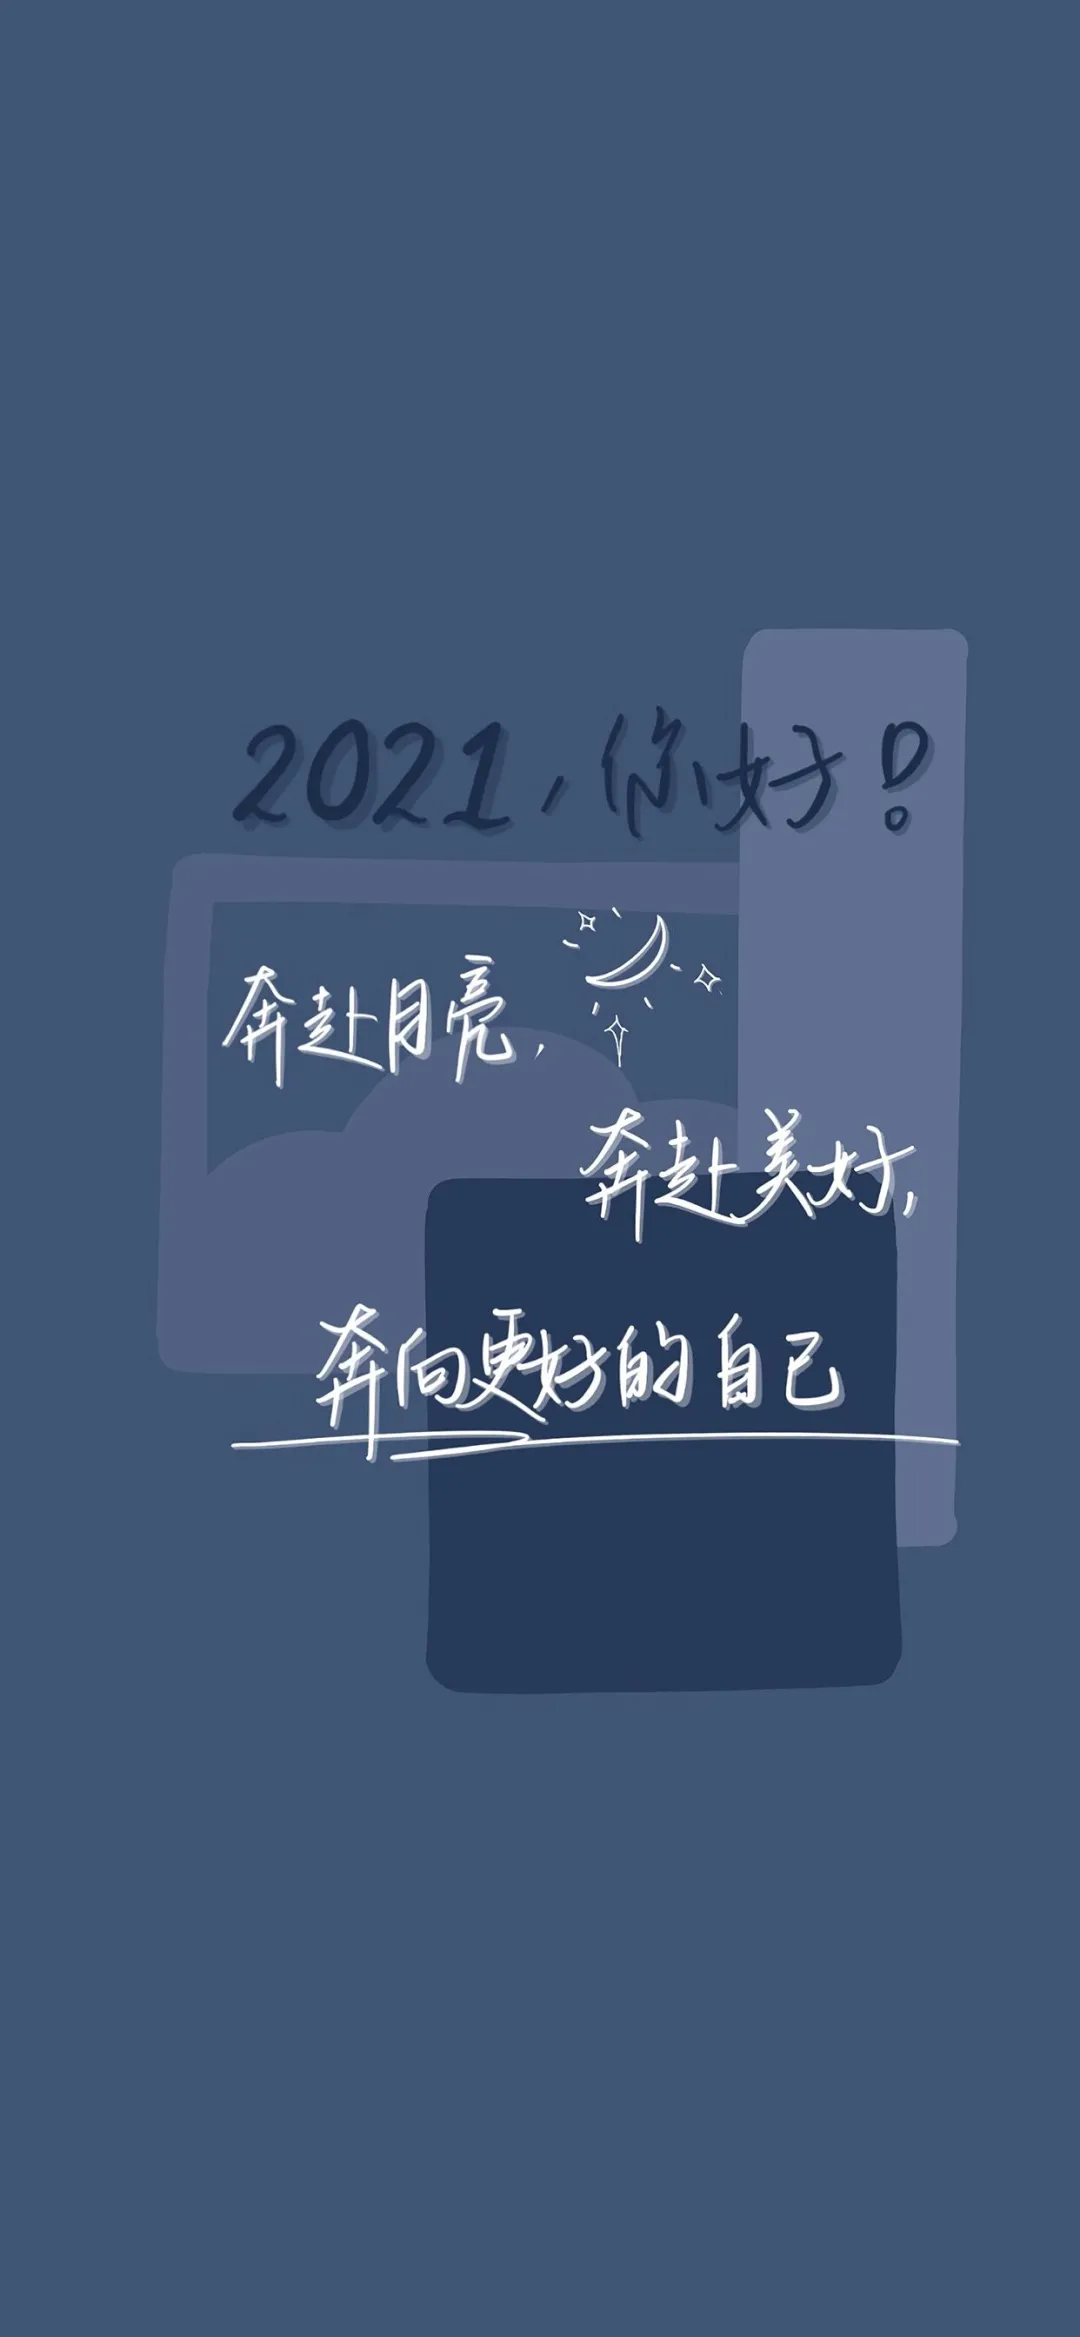 2021年手机壁纸文字图片